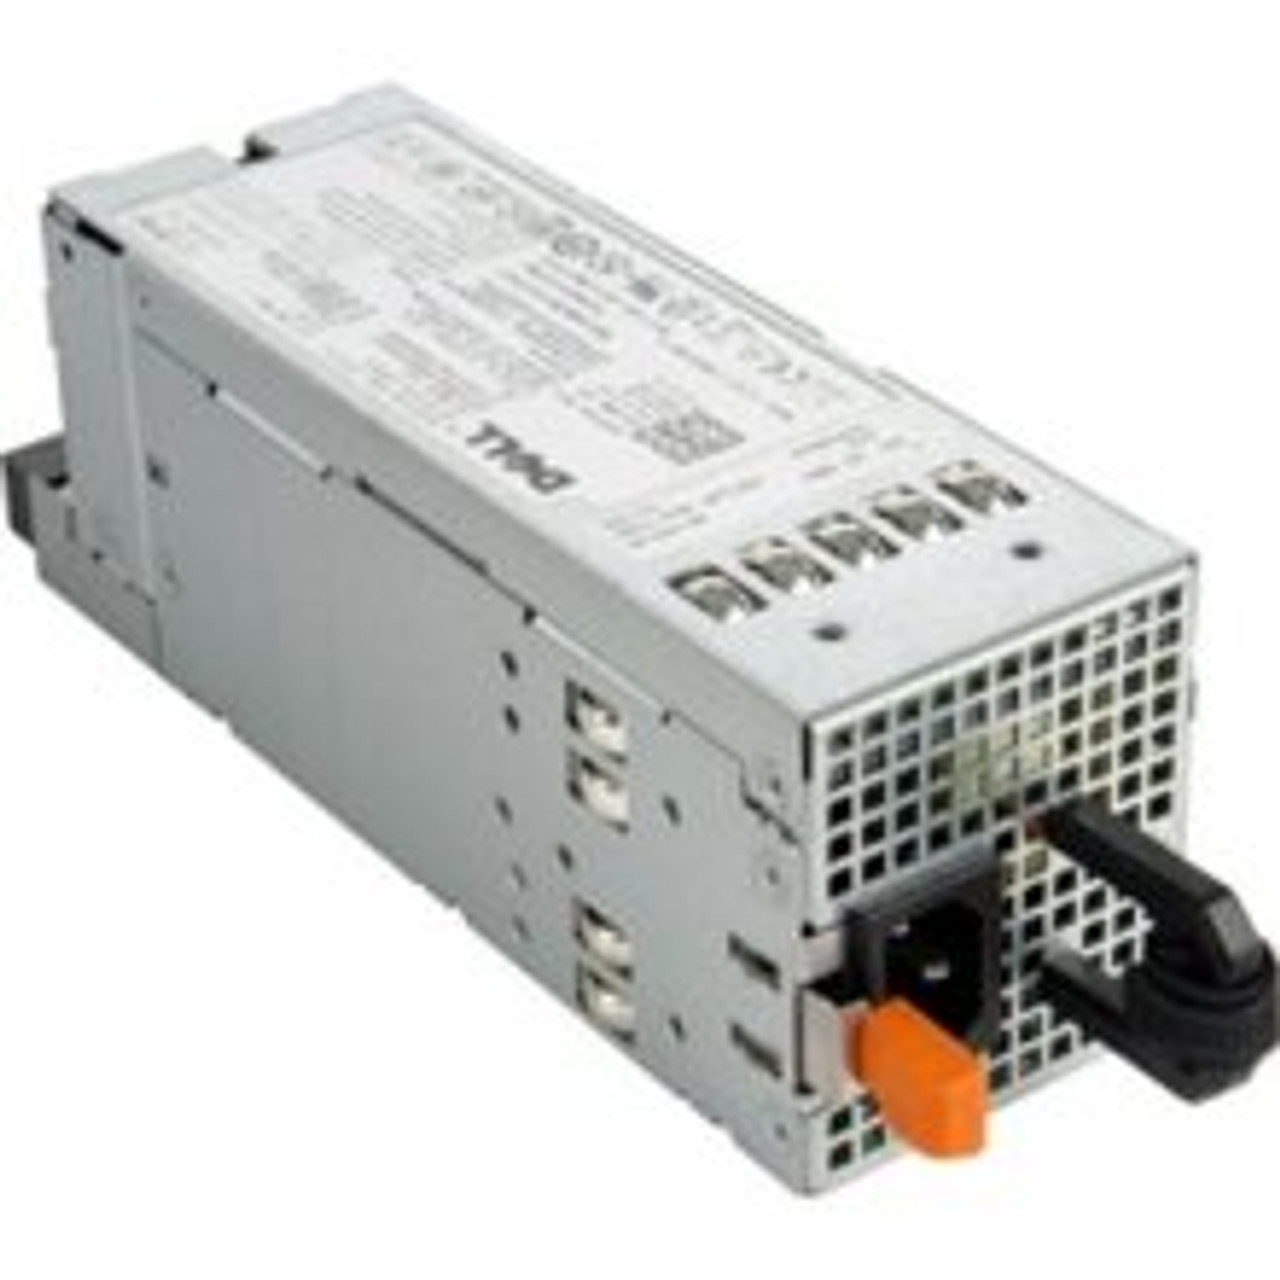 DELL PT164 870 Watt Redundant Power Supply For Poweredge R710 / T610